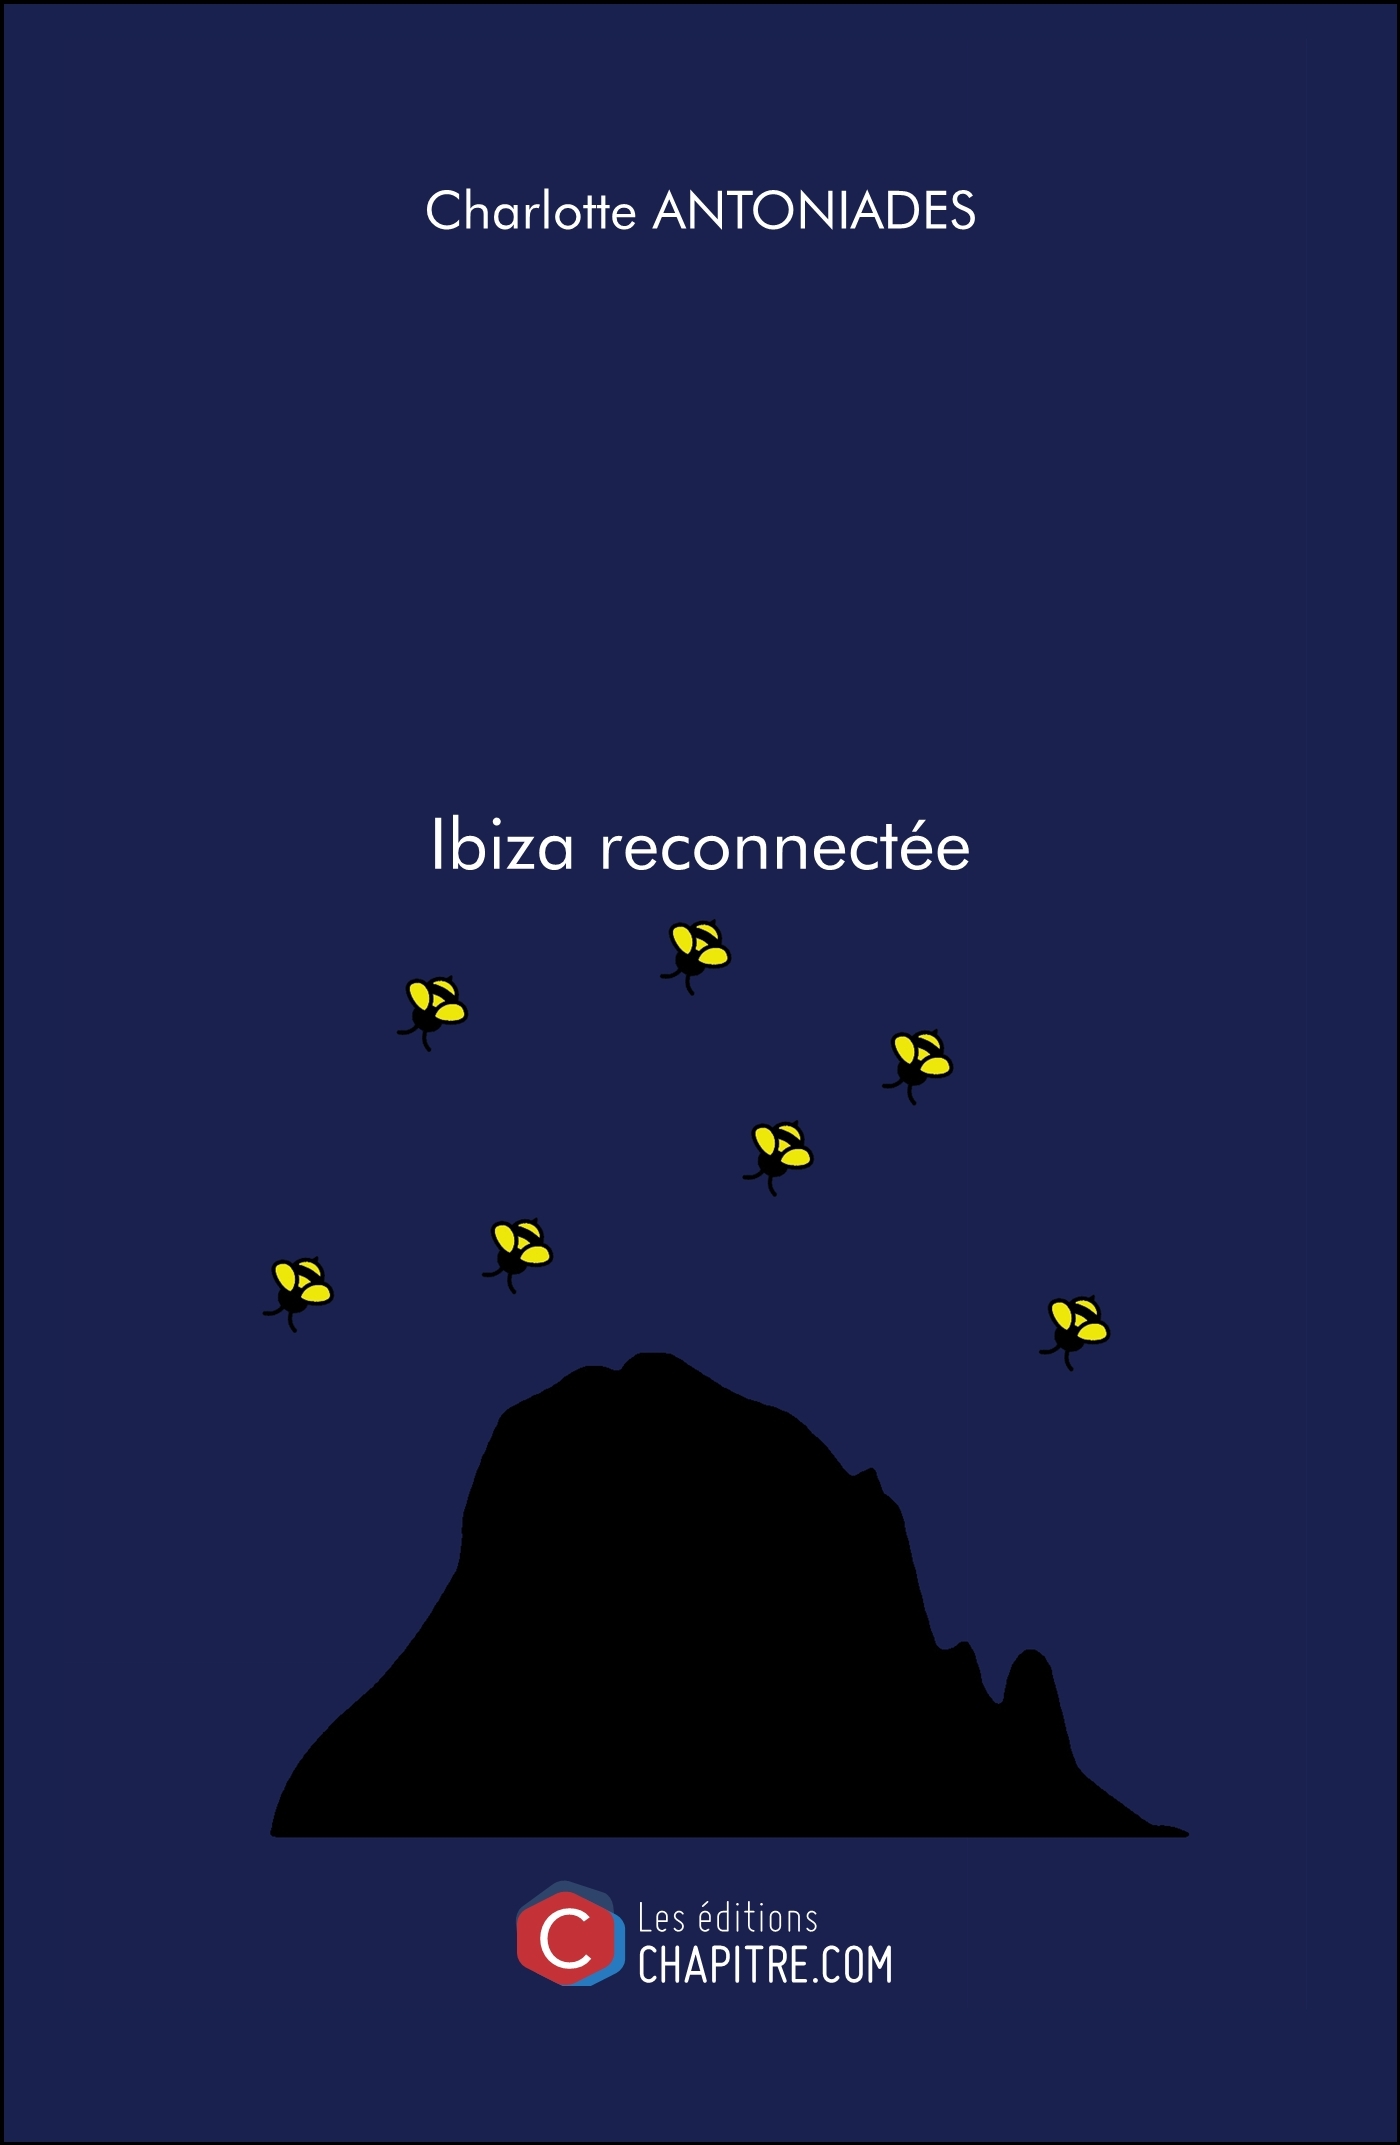 Ibiza Reconnectee